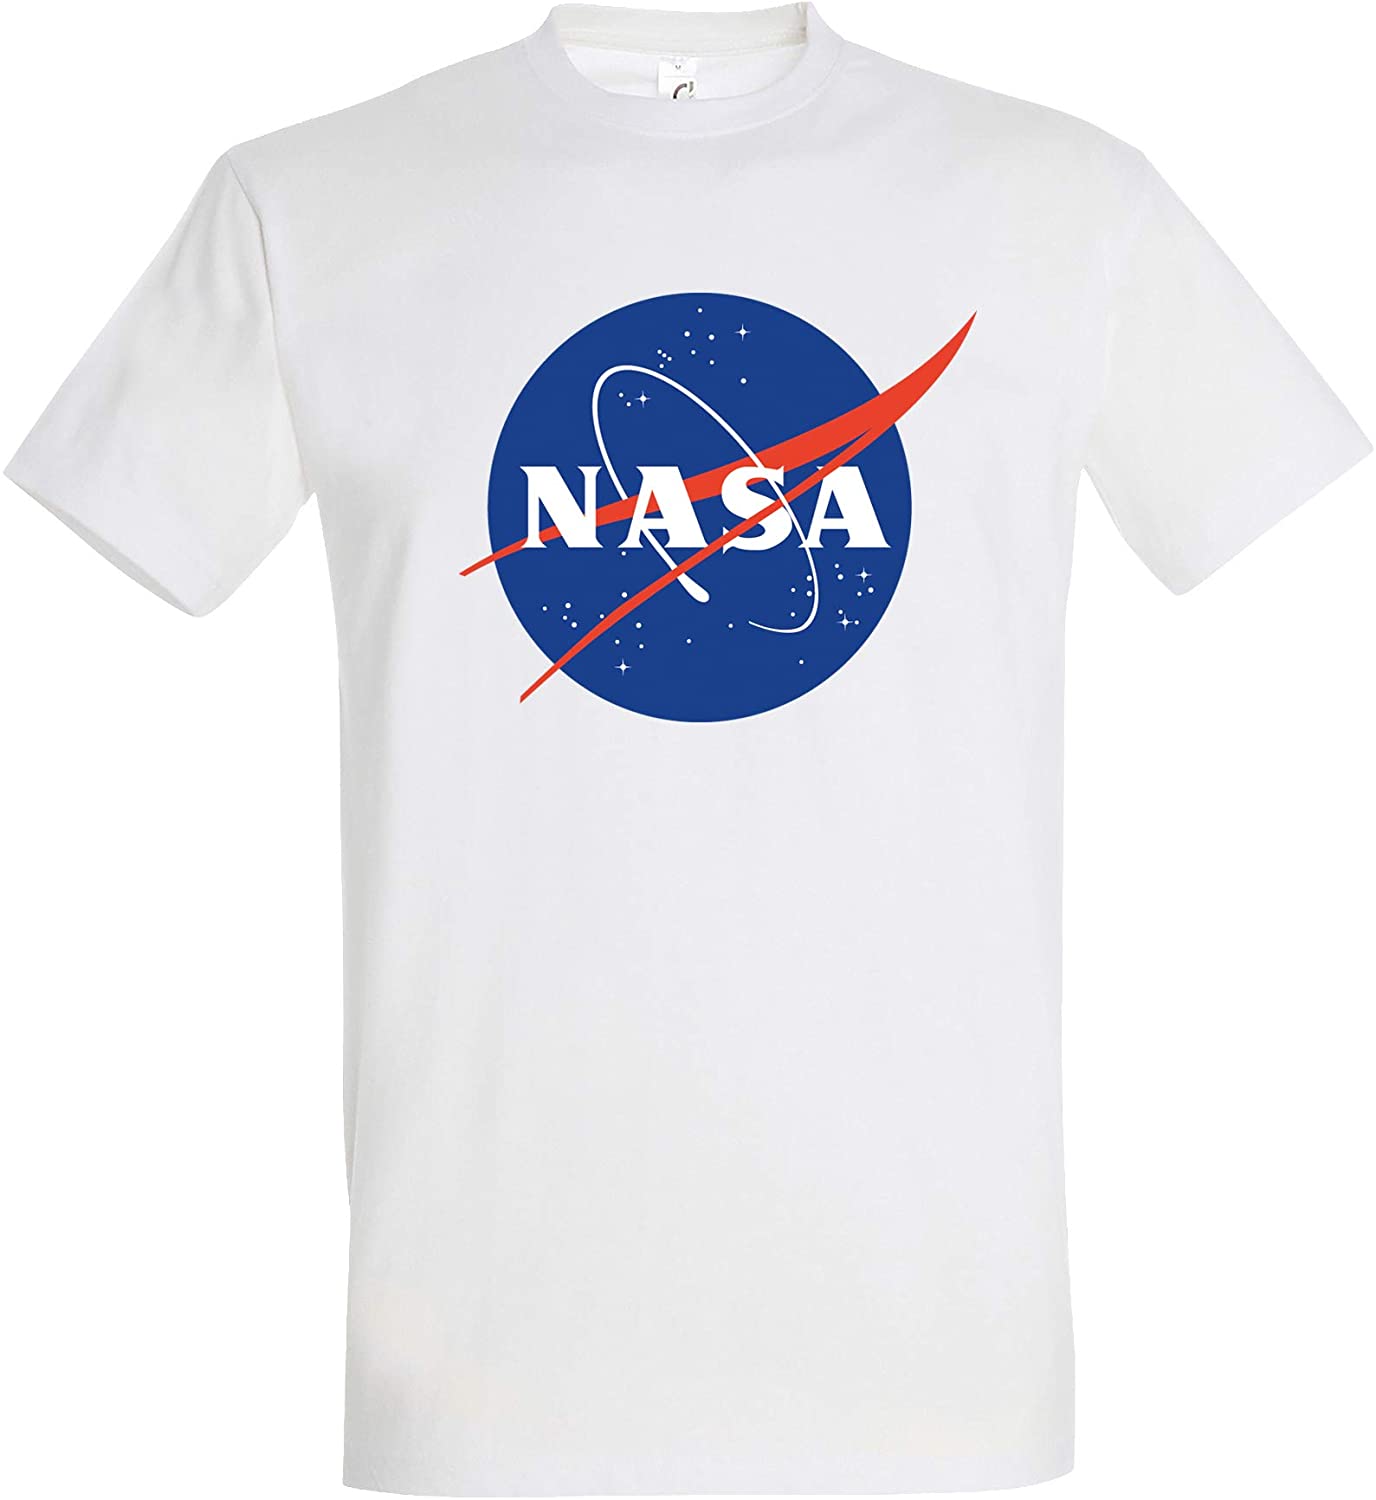 T-Shirt NASA Logo Meatball Insignia Space Raumfahrt Astronaut Shirt (Weiss, S)